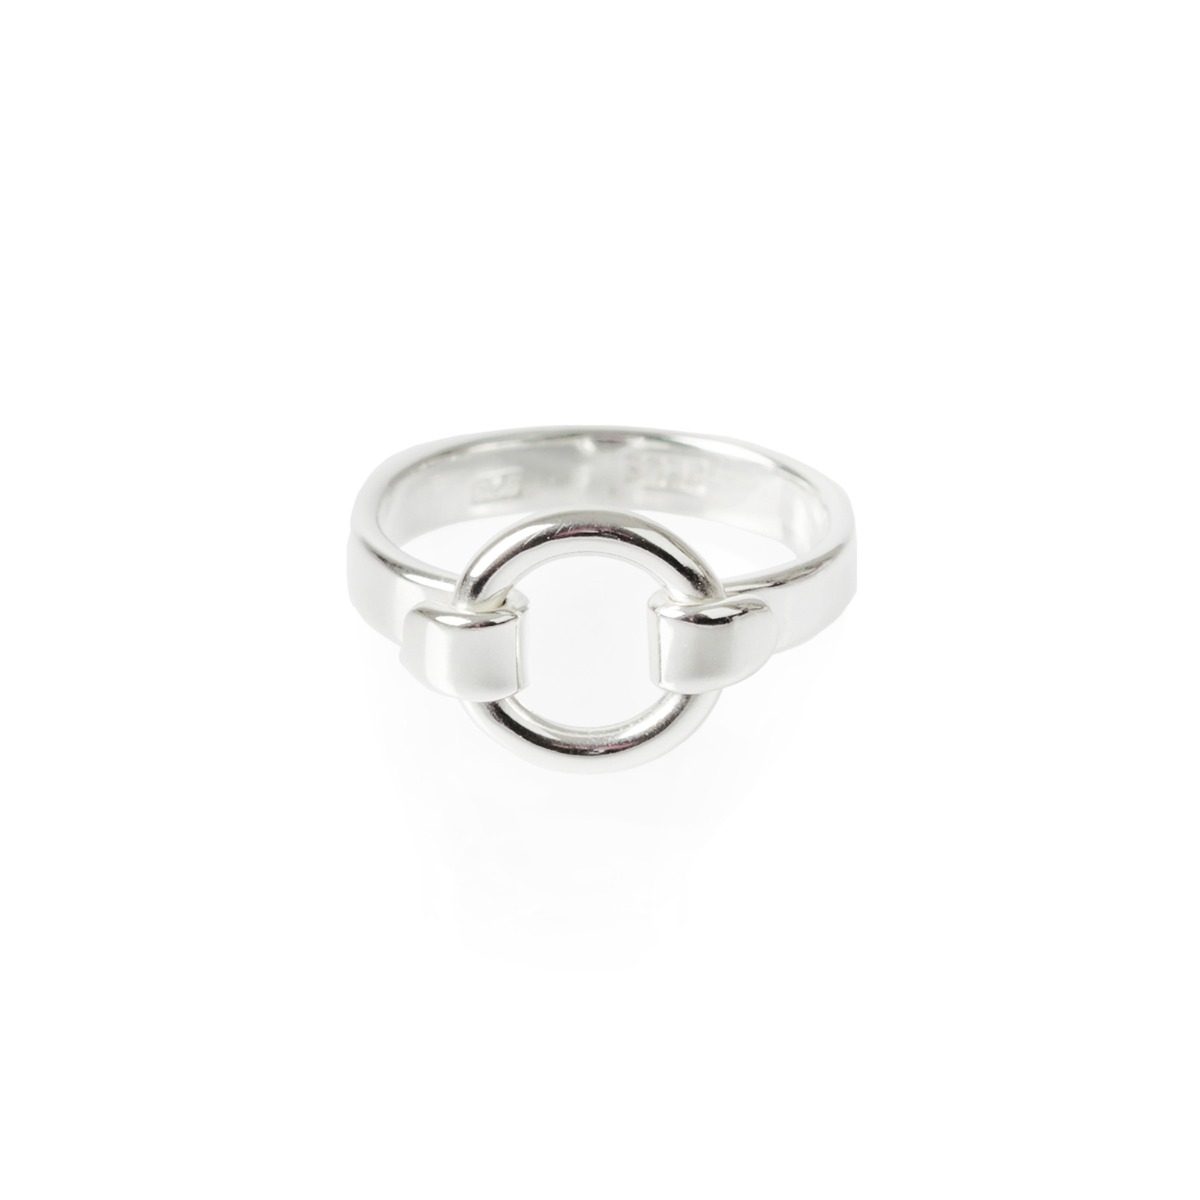 7619 Ring silver med ring 16 mm